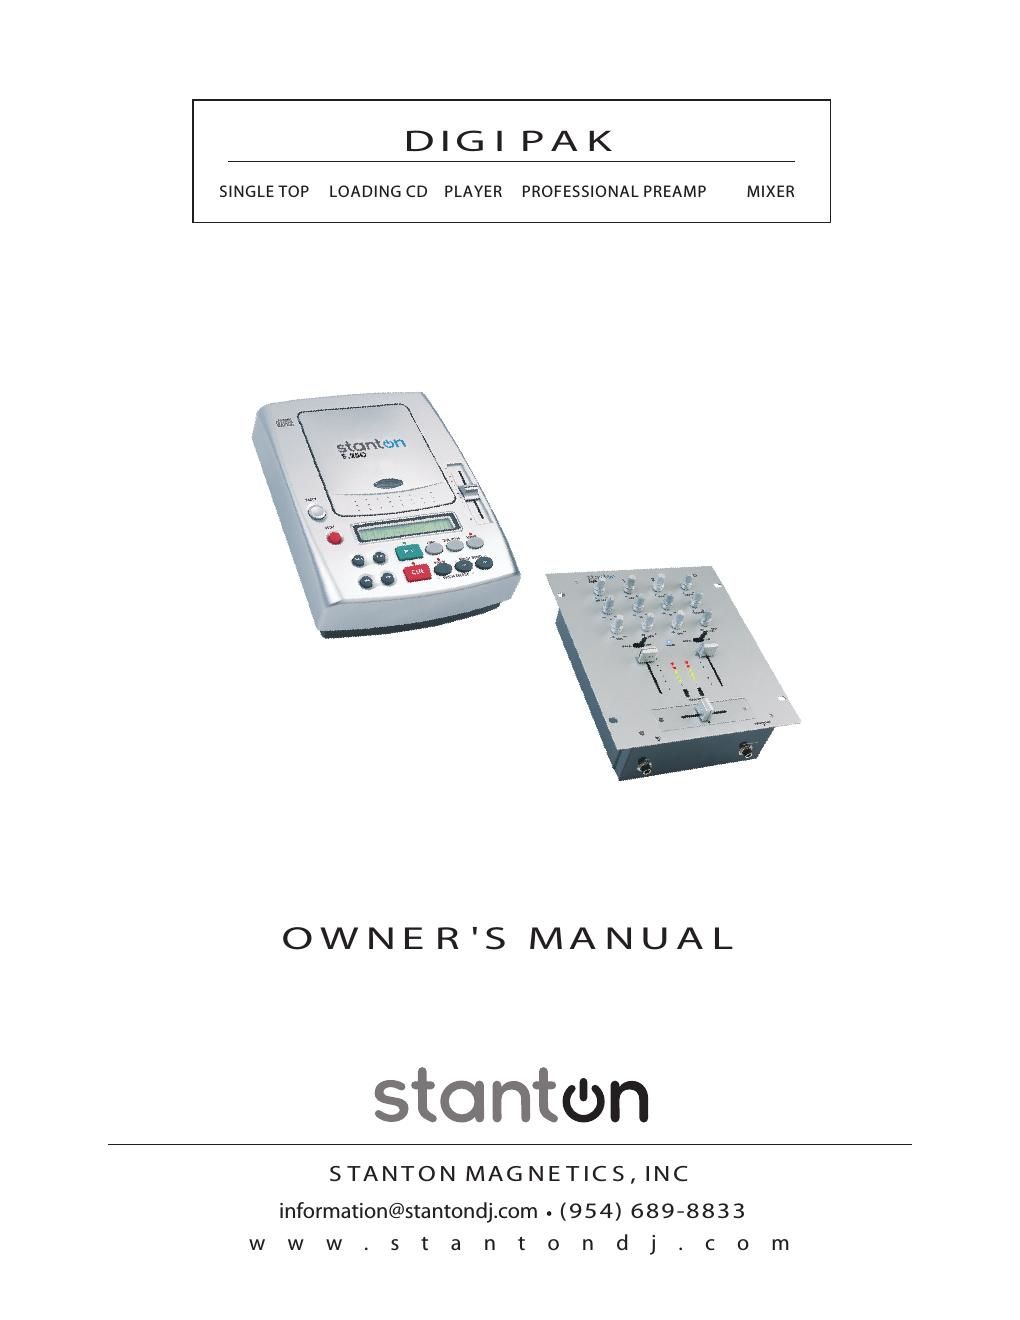 stanton digipak owners manual